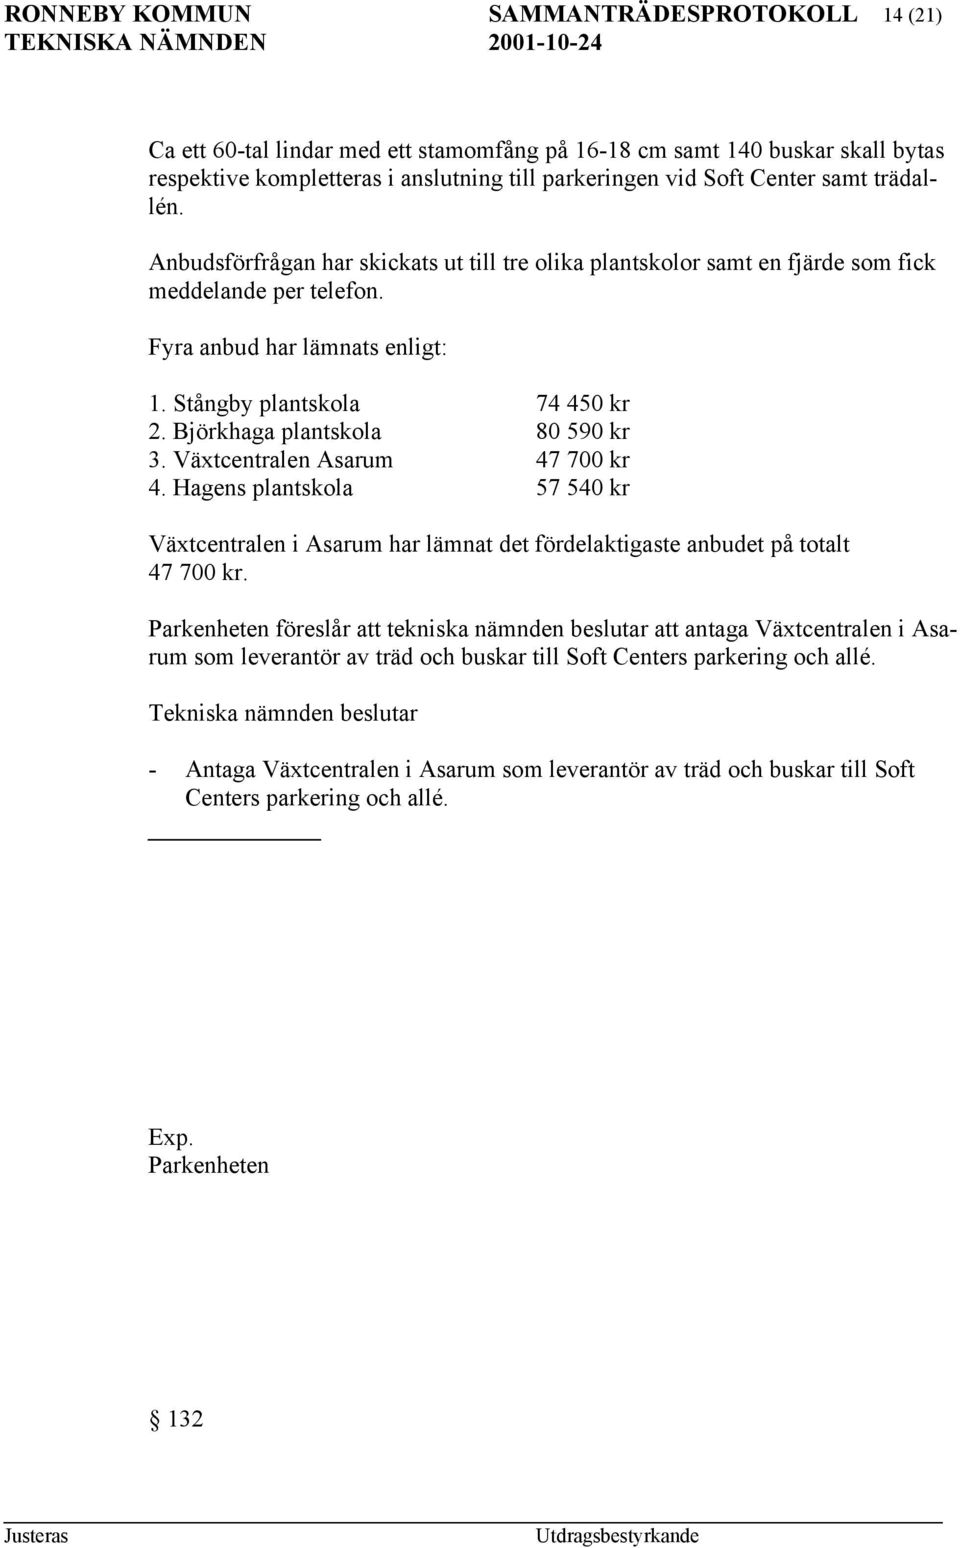 Björkhaga plantskola 80 590 kr 3. Växtcentralen Asarum 47 700 kr 4. Hagens plantskola 57 540 kr Växtcentralen i Asarum har lämnat det fördelaktigaste anbudet på totalt 47 700 kr.